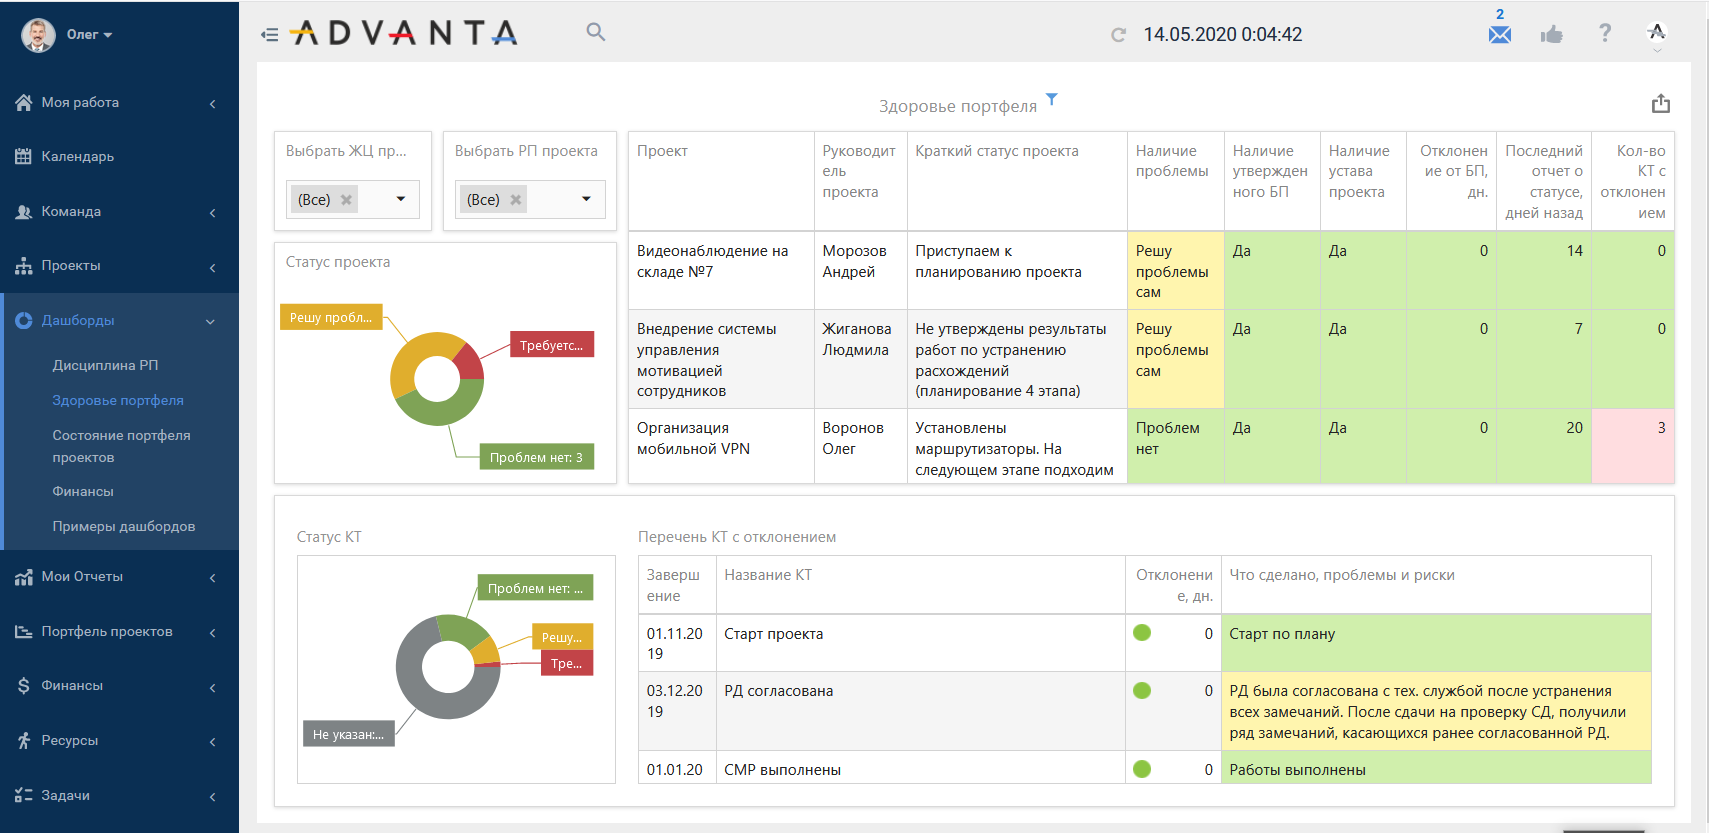 Аналитика показателей портфеля проектов в программном продукте для проектного управления ADVANTA